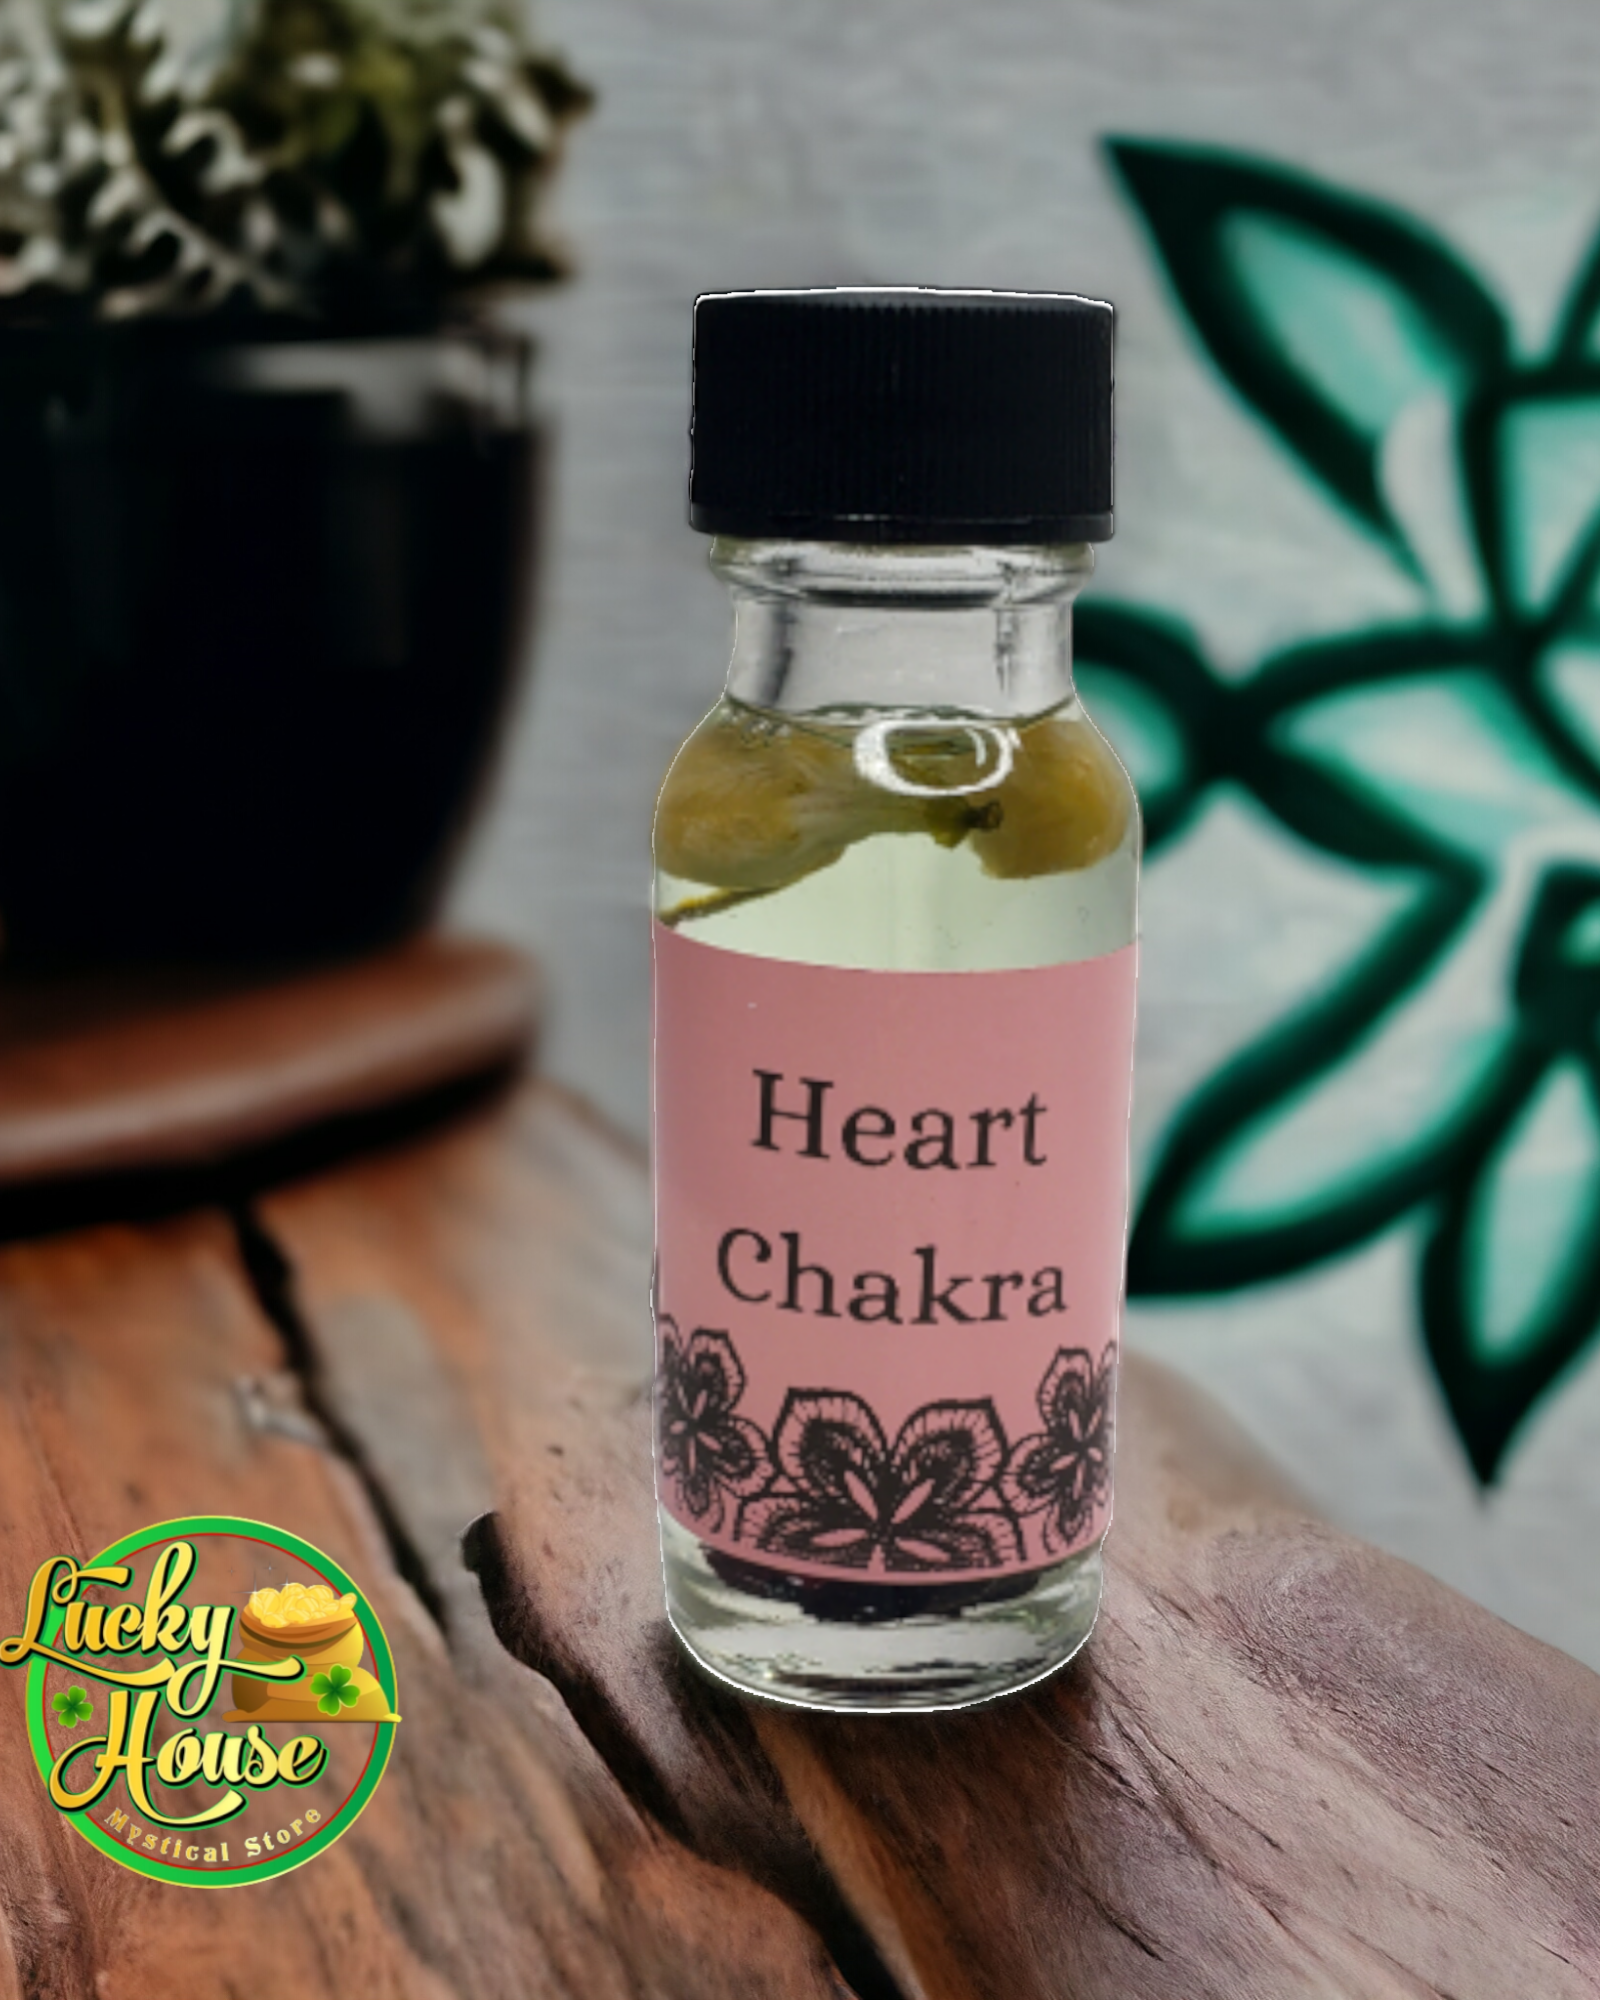 Heart chakra herbal oil spiritual Anahata